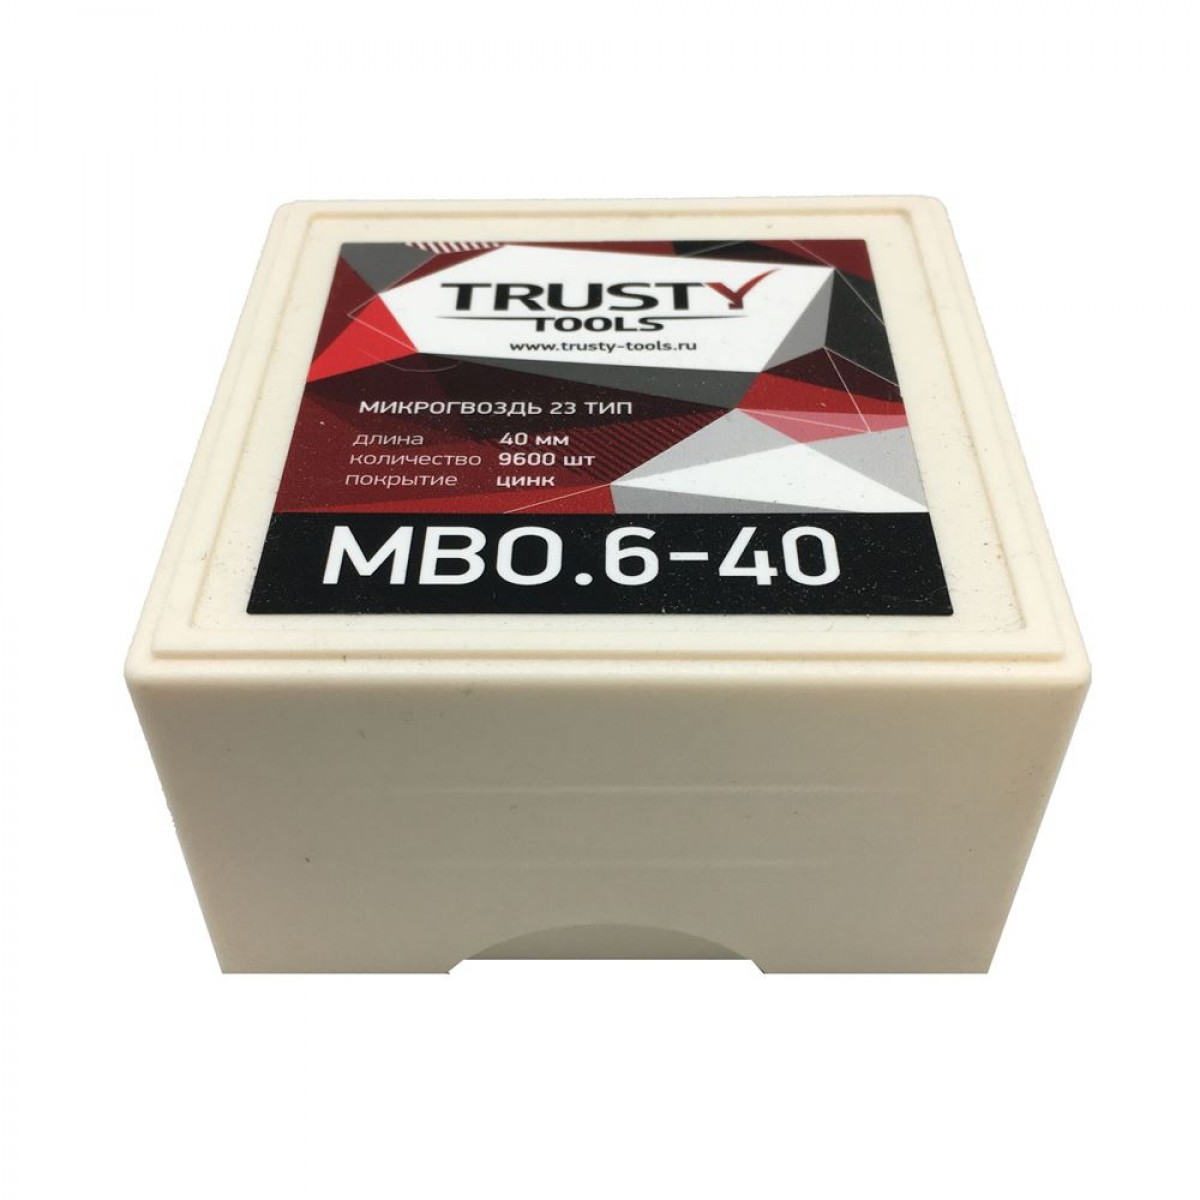 Микрогвоздь Trusty 40 мм MBO.6-40 тип 23, 23 ga, MB (9600 шт)